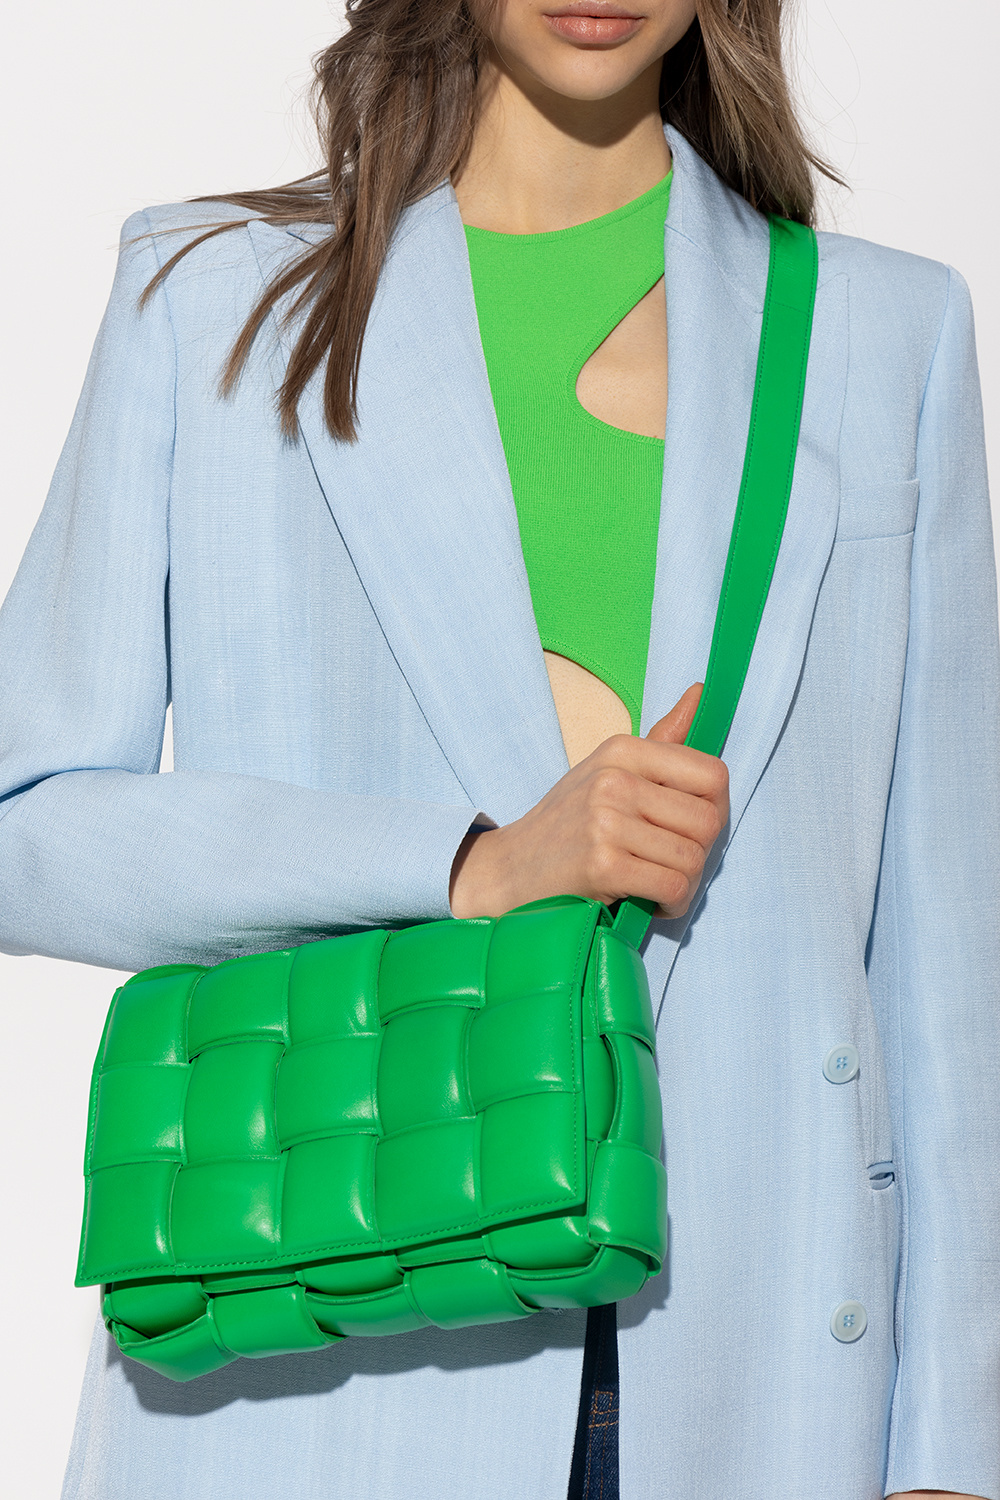 BOTTEGA VENETA: Padded Cassette bag in woven nappa - Green  Bottega Veneta  shoulder bag 591970 VCQR1 online at